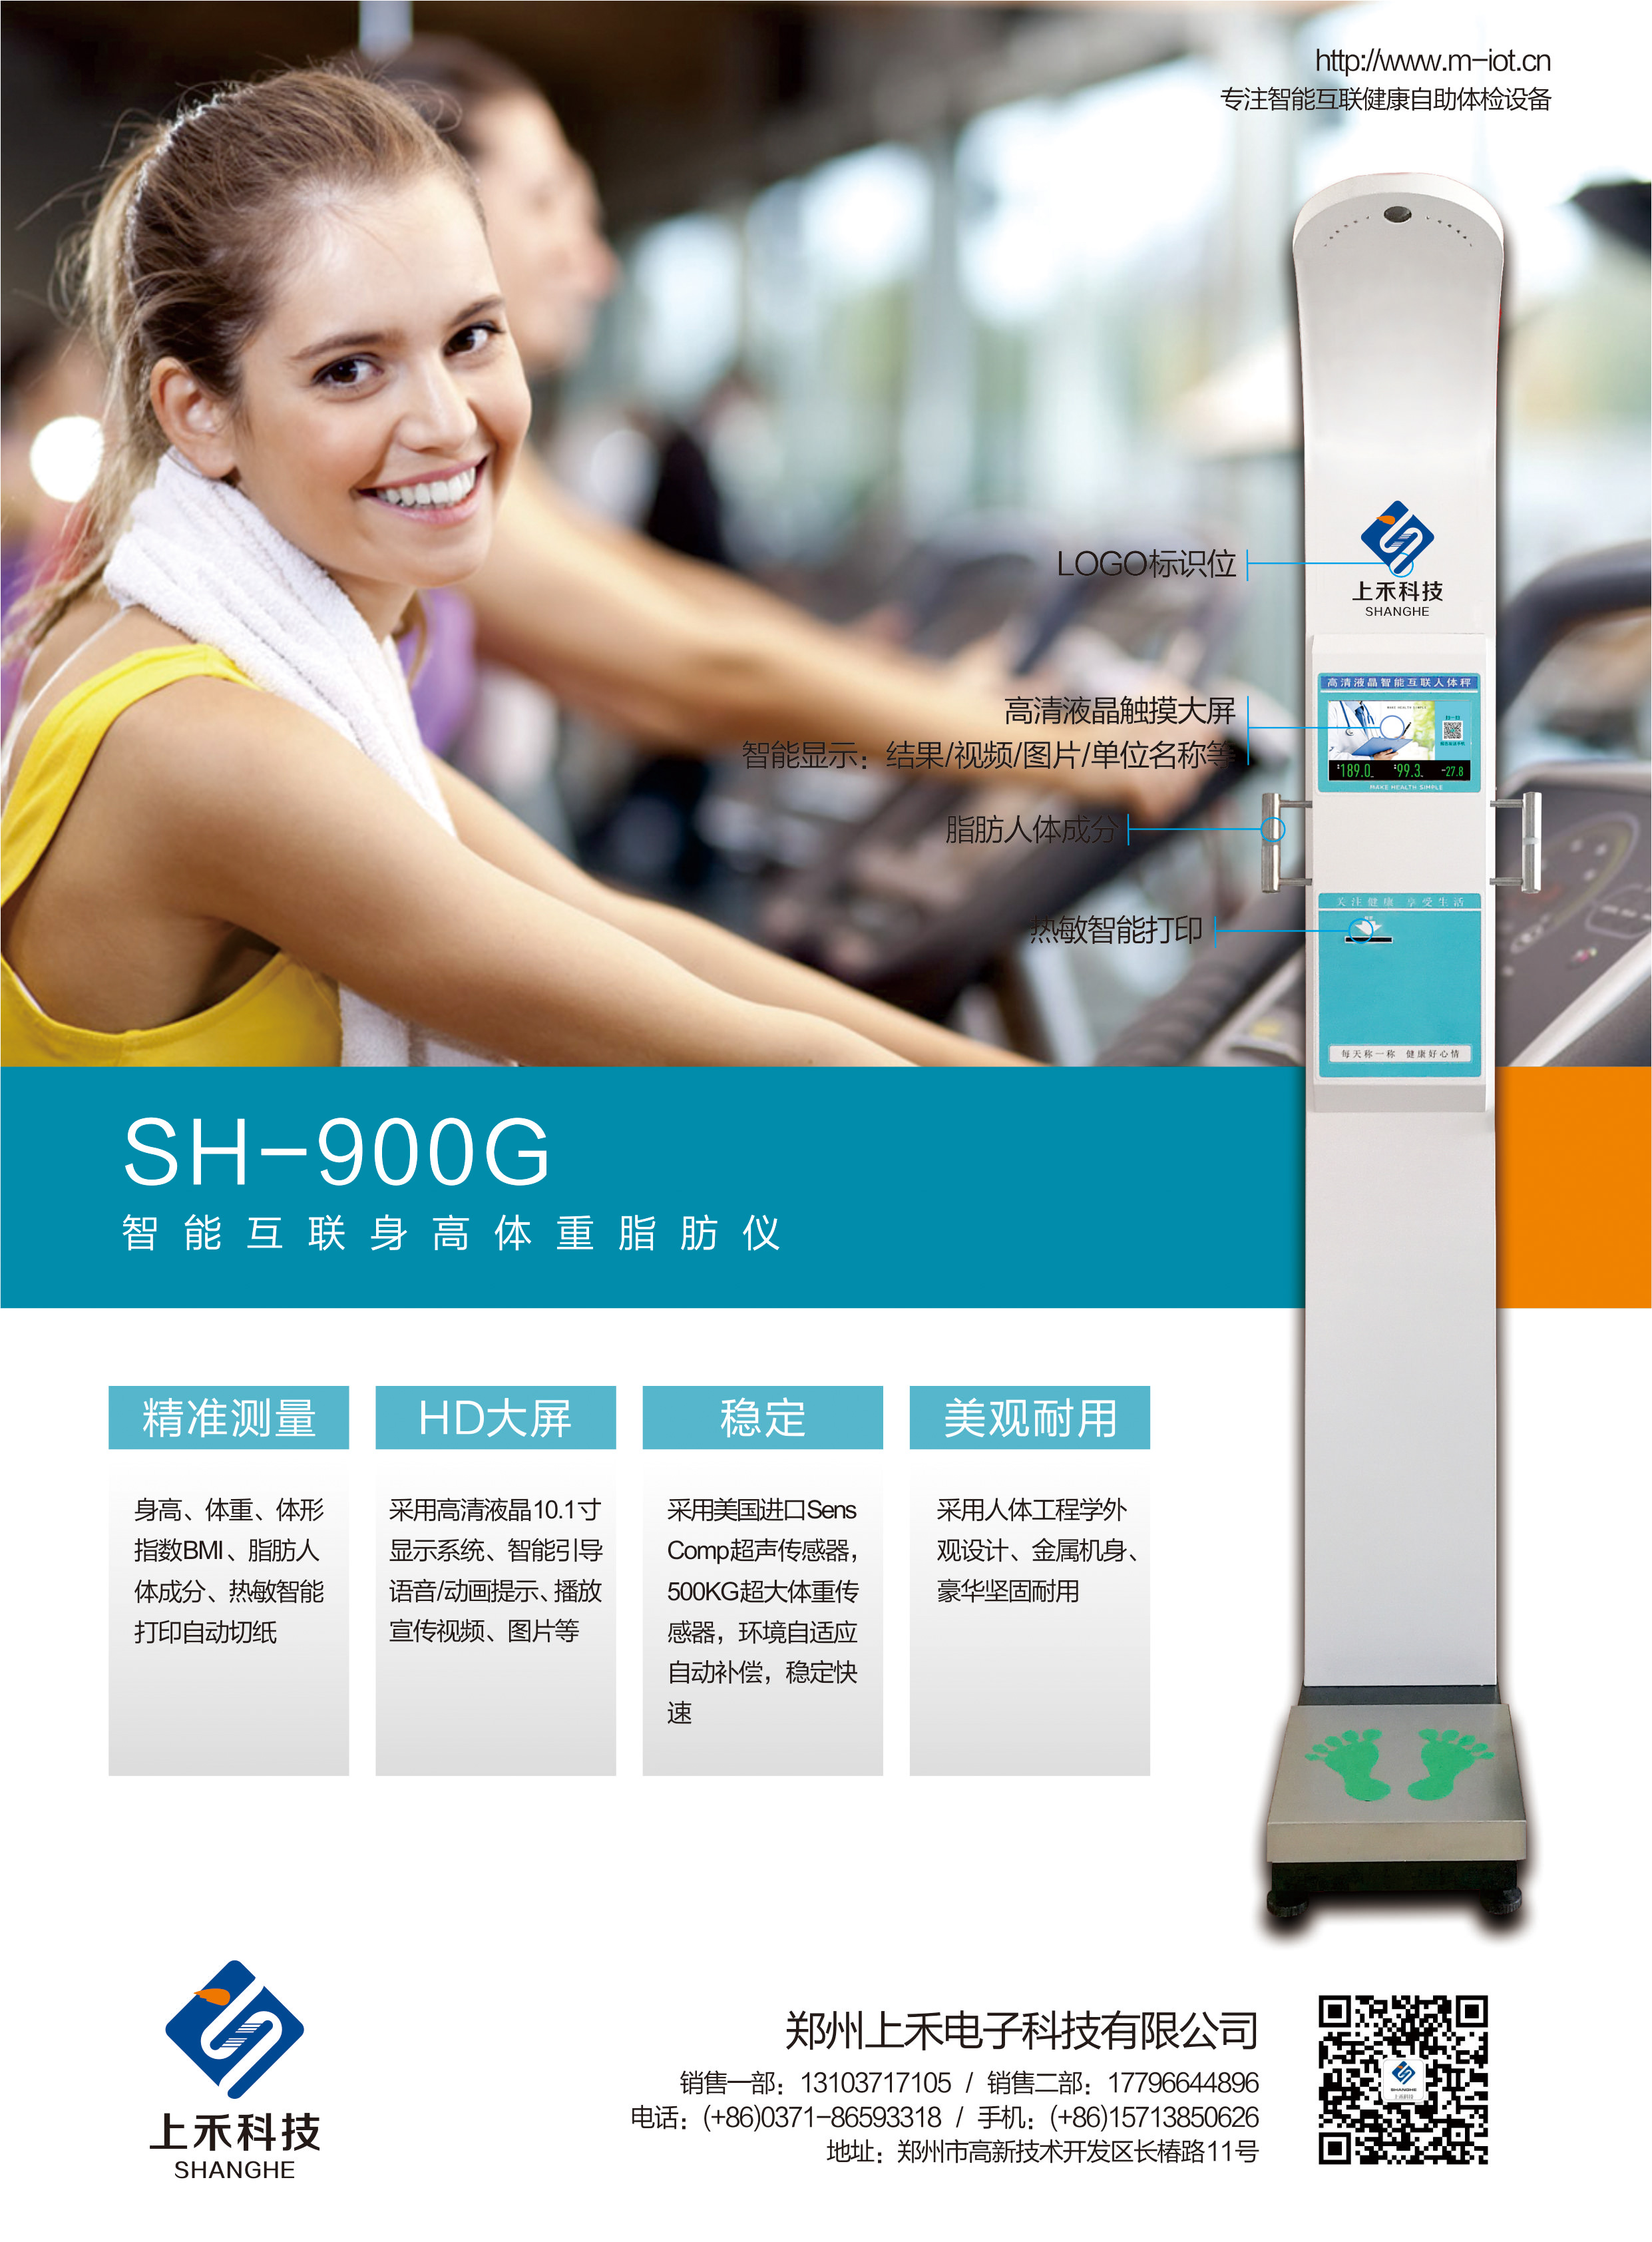 SH-900G智能互联身高体重脂肪仪